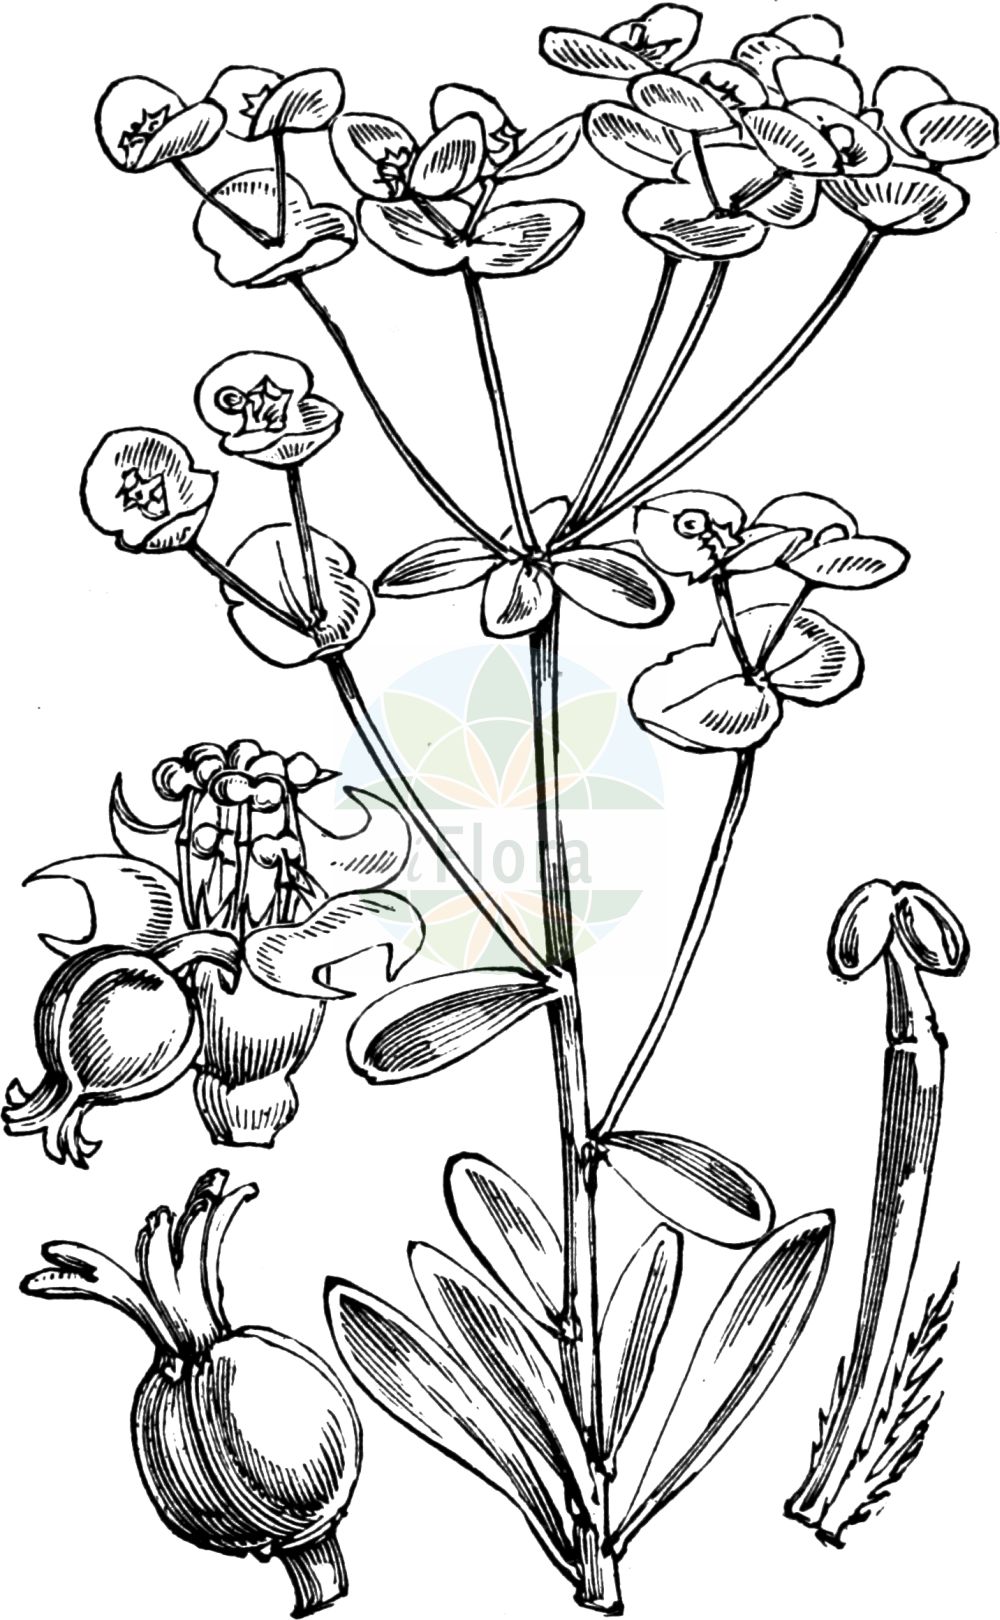 Historische Abbildung von Euphorbia amygdaloides (Mandelblättrige Wolfsmilch - Wood Spurge). Das Bild zeigt Blatt, Bluete, Frucht und Same. ---- Historical Drawing of Euphorbia amygdaloides (Mandelblättrige Wolfsmilch - Wood Spurge). The image is showing leaf, flower, fruit and seed.(Euphorbia amygdaloides,Mandelblättrige Wolfsmilch,Wood Spurge,Characias amygdaloides,Esula amygdaloides,Euphorbia amygdaloides,Tithymalus amygdaloides,Mandelblaettrige Wolfsmilch,Wood Spurge,Euphorbia,Wolfsmilch,Spurge,Euphorbiaceae,Wolfsmilchgewächse,Spurge family,Blatt,Bluete,Frucht,Same,leaf,flower,fruit,seed,Fitch et al. (1880))